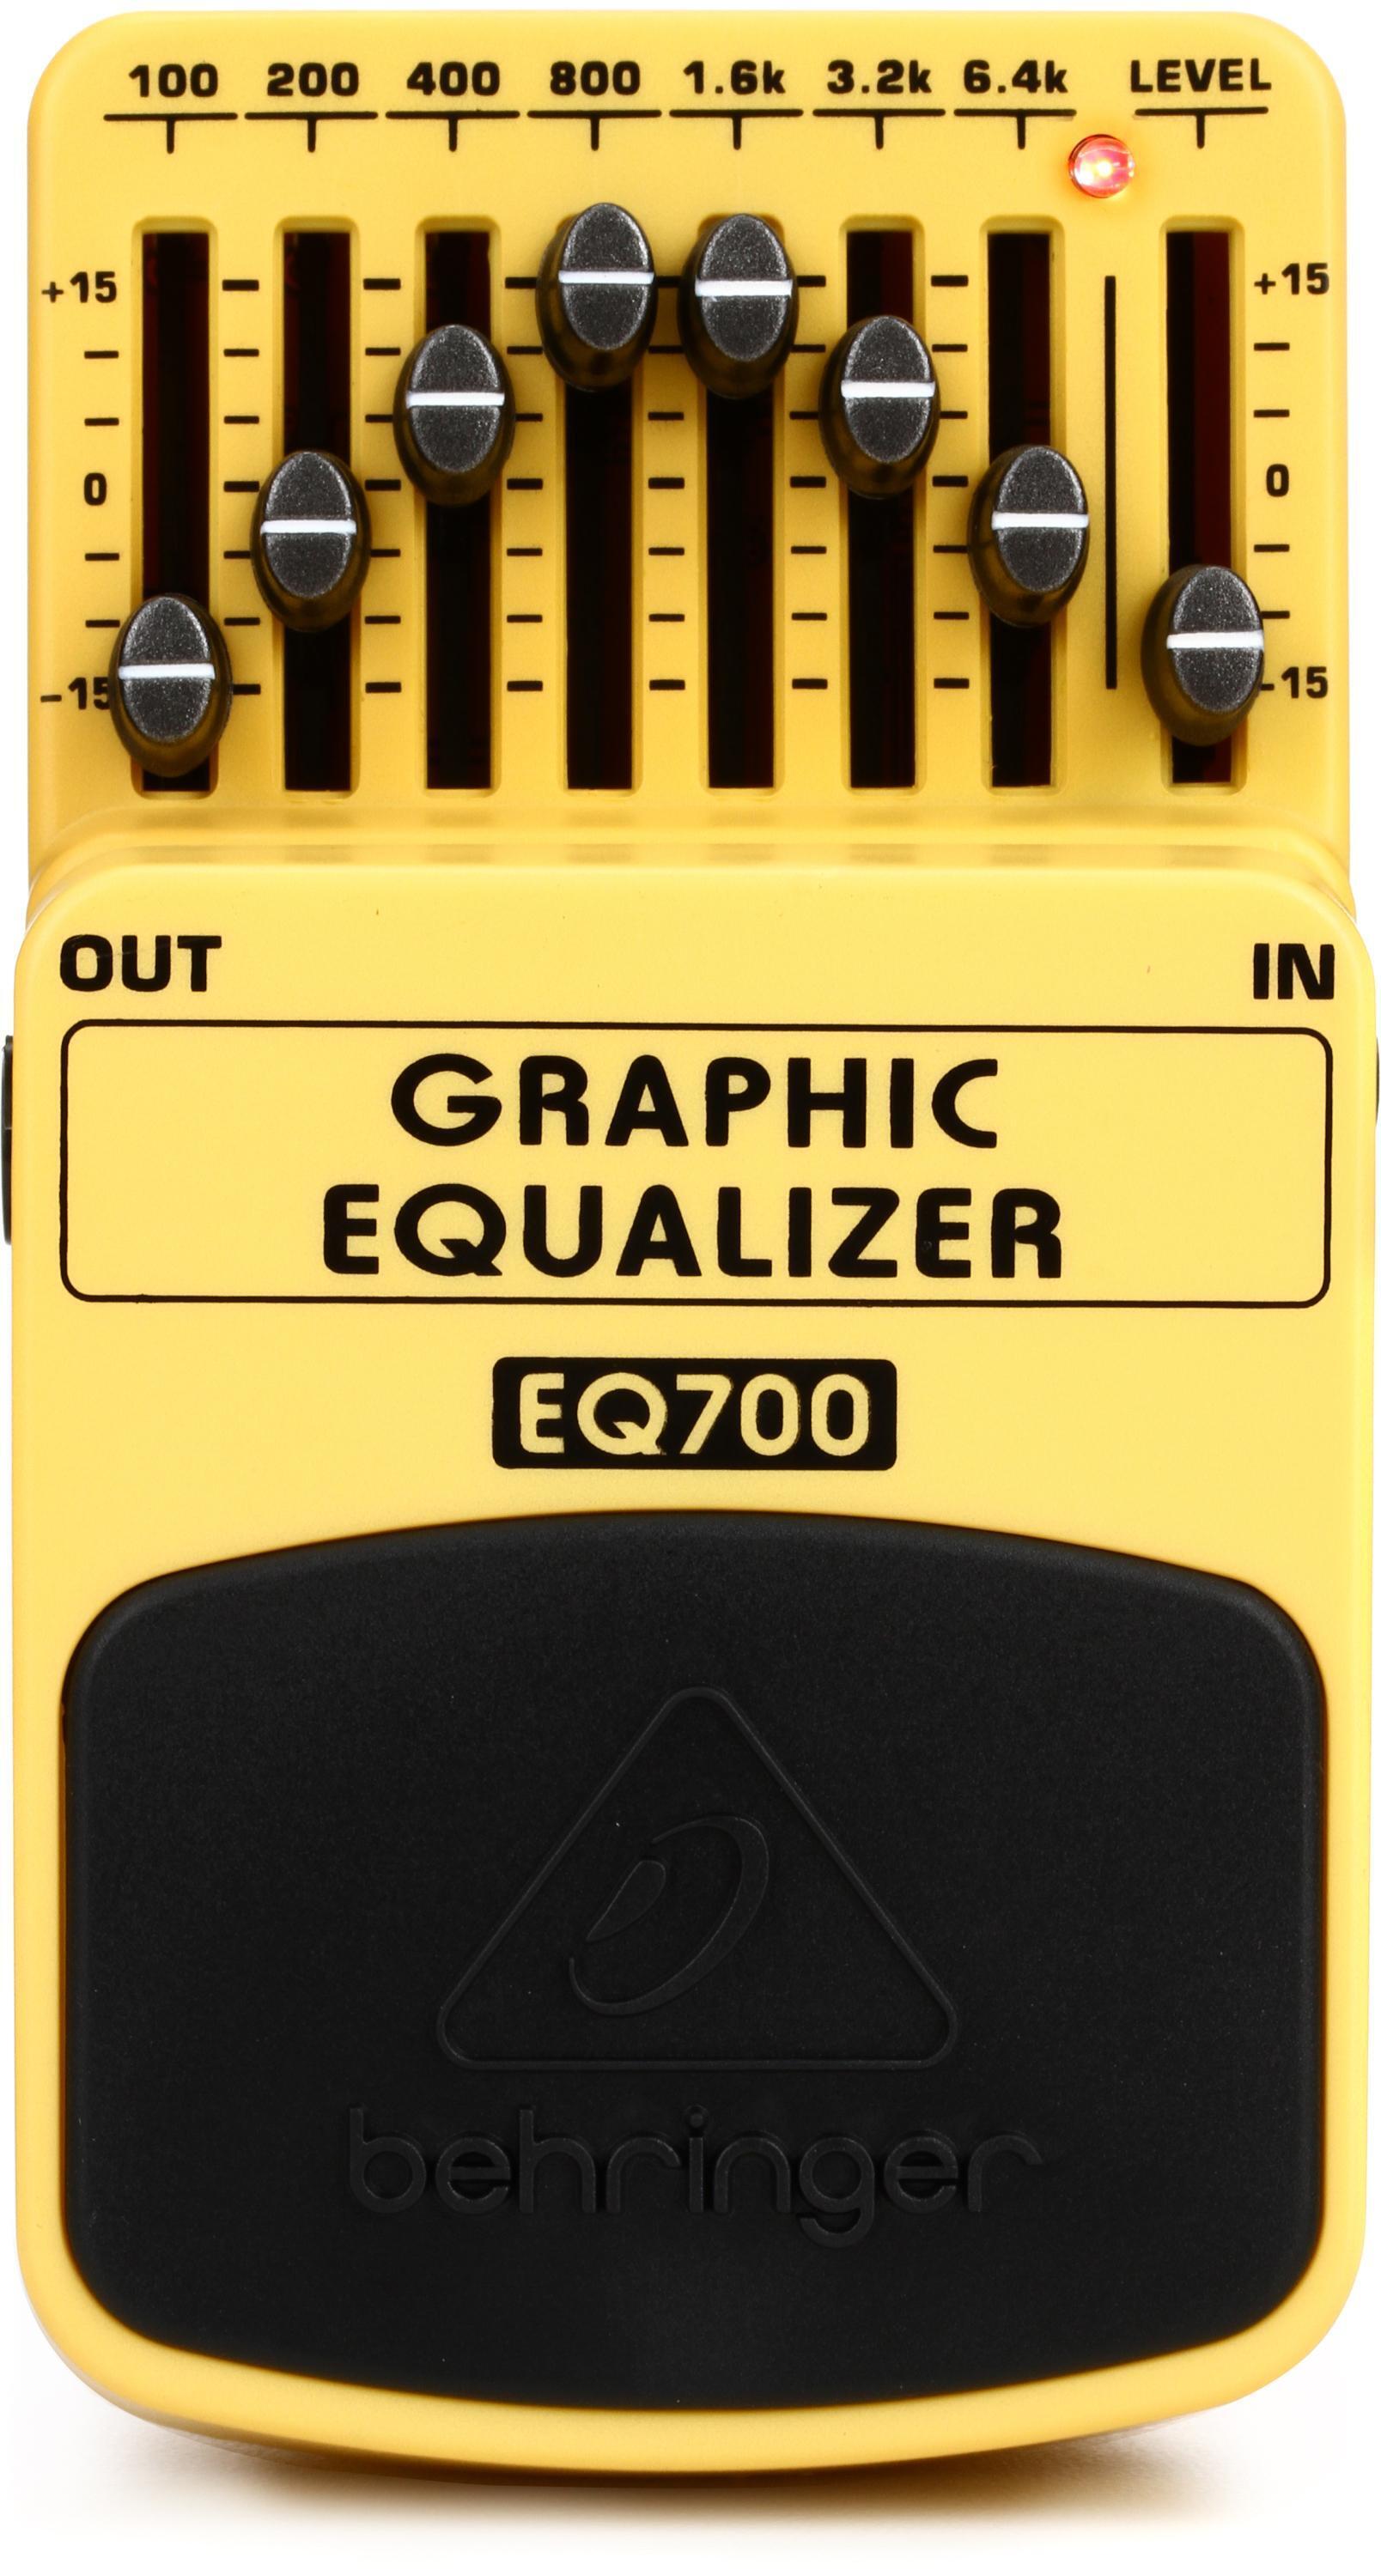 Bundled Item: Behringer EQ700 Graphic Equalizer Pedal